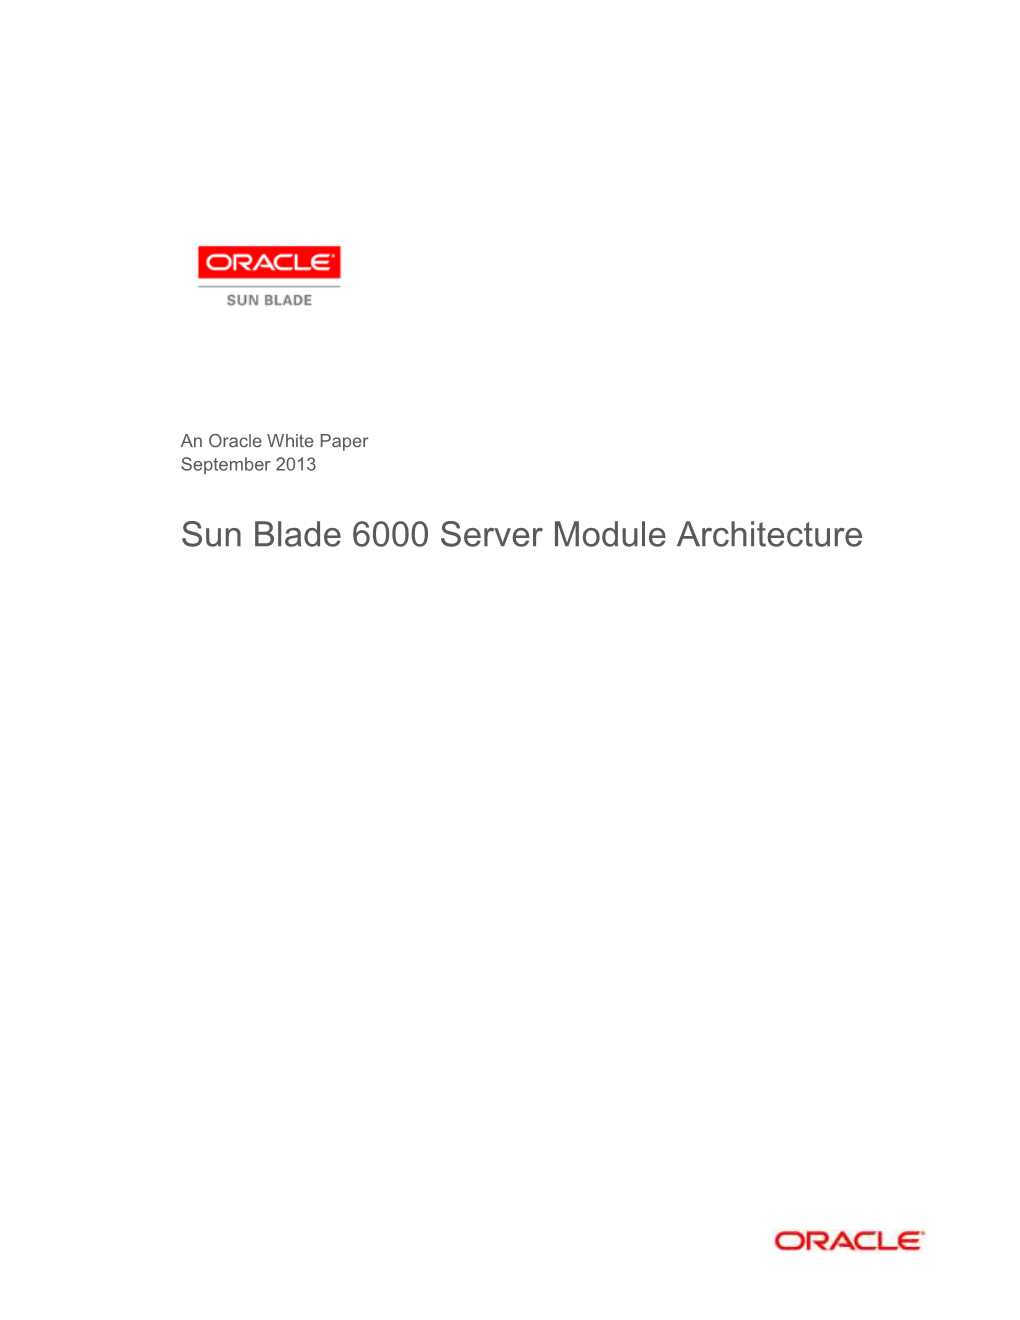 Sun Blade 6000 Server Module Architecture White Paper